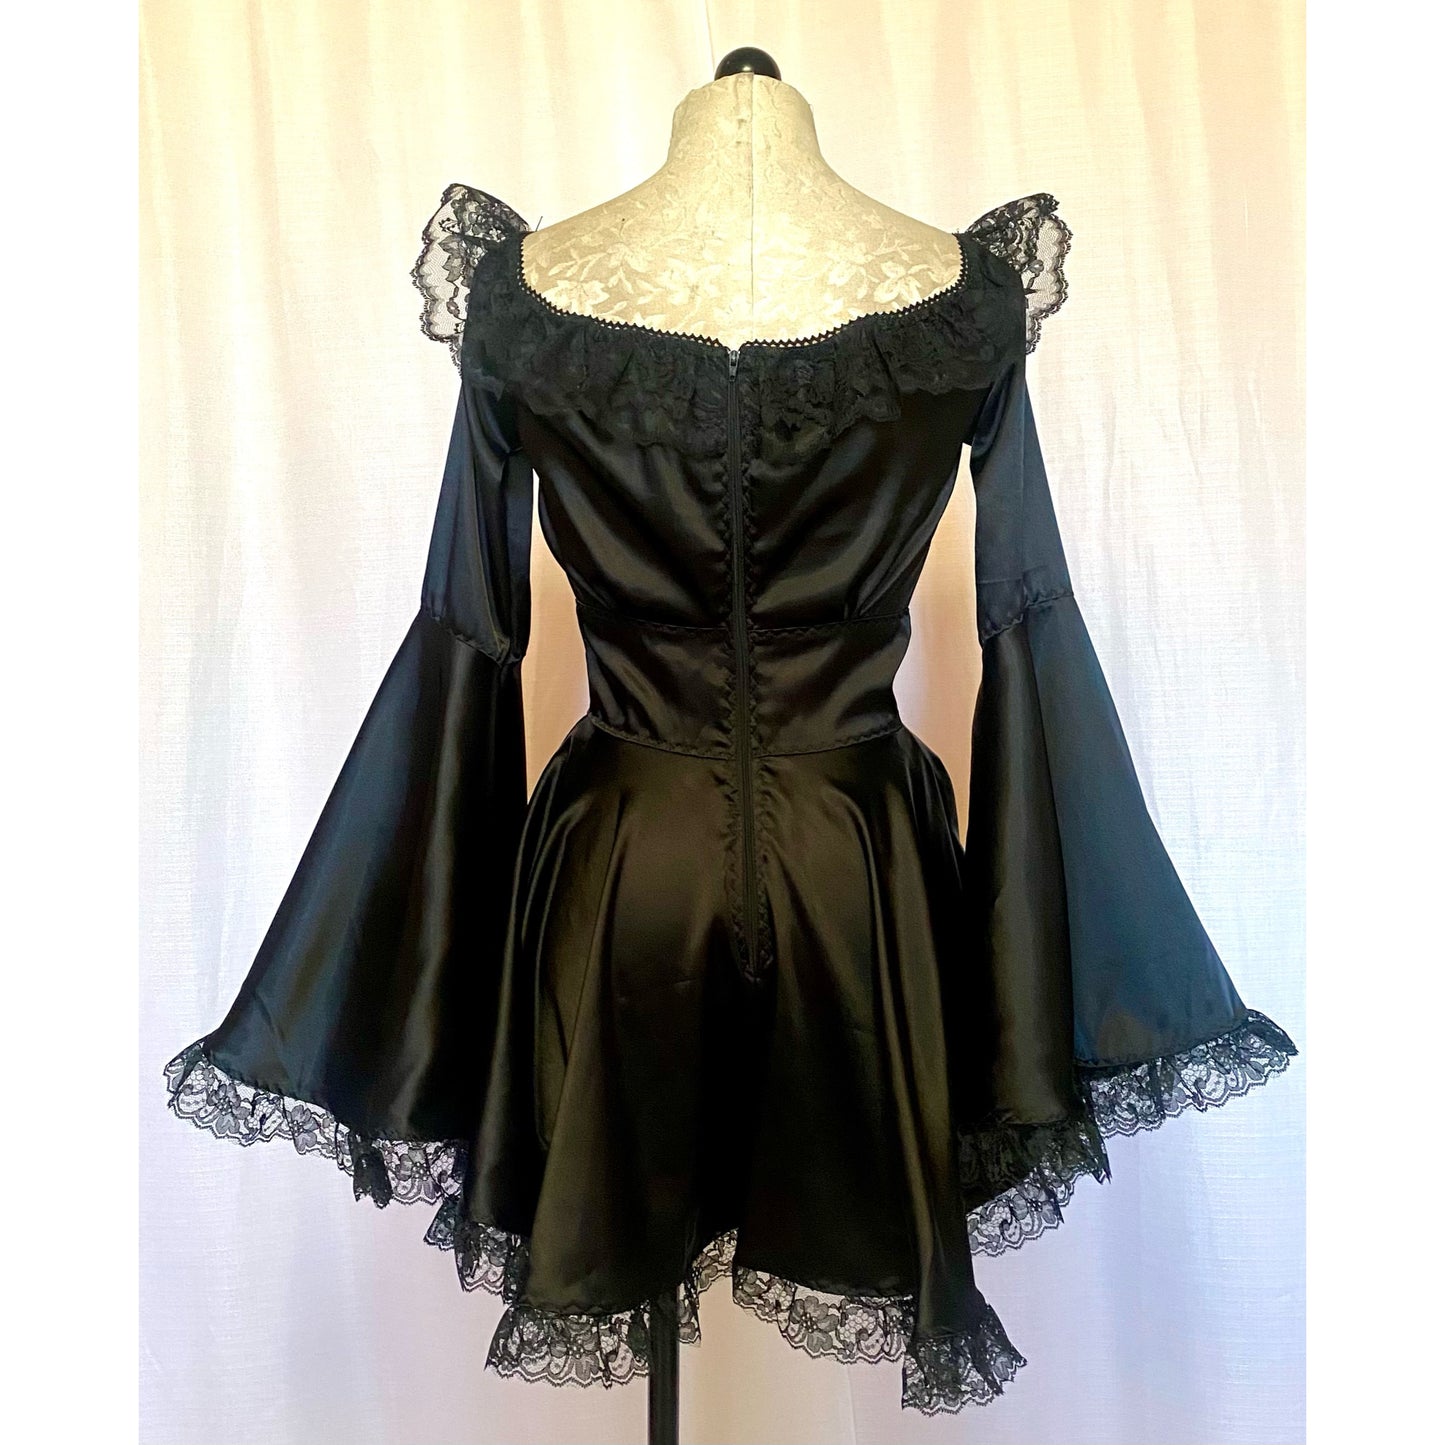 The Deidre Dress in Black